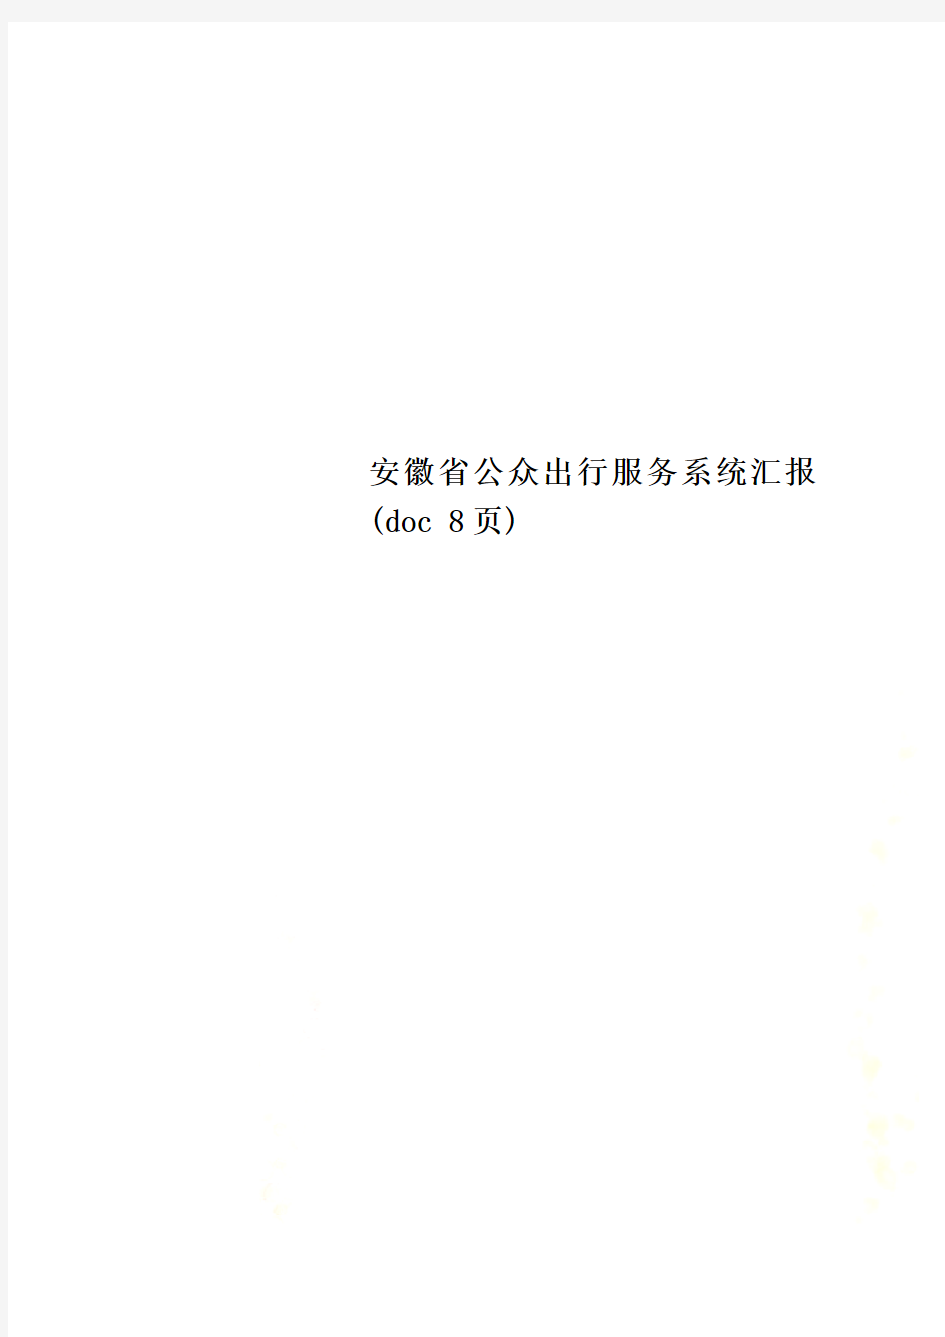 安徽省公众出行服务系统汇报(doc 8页)